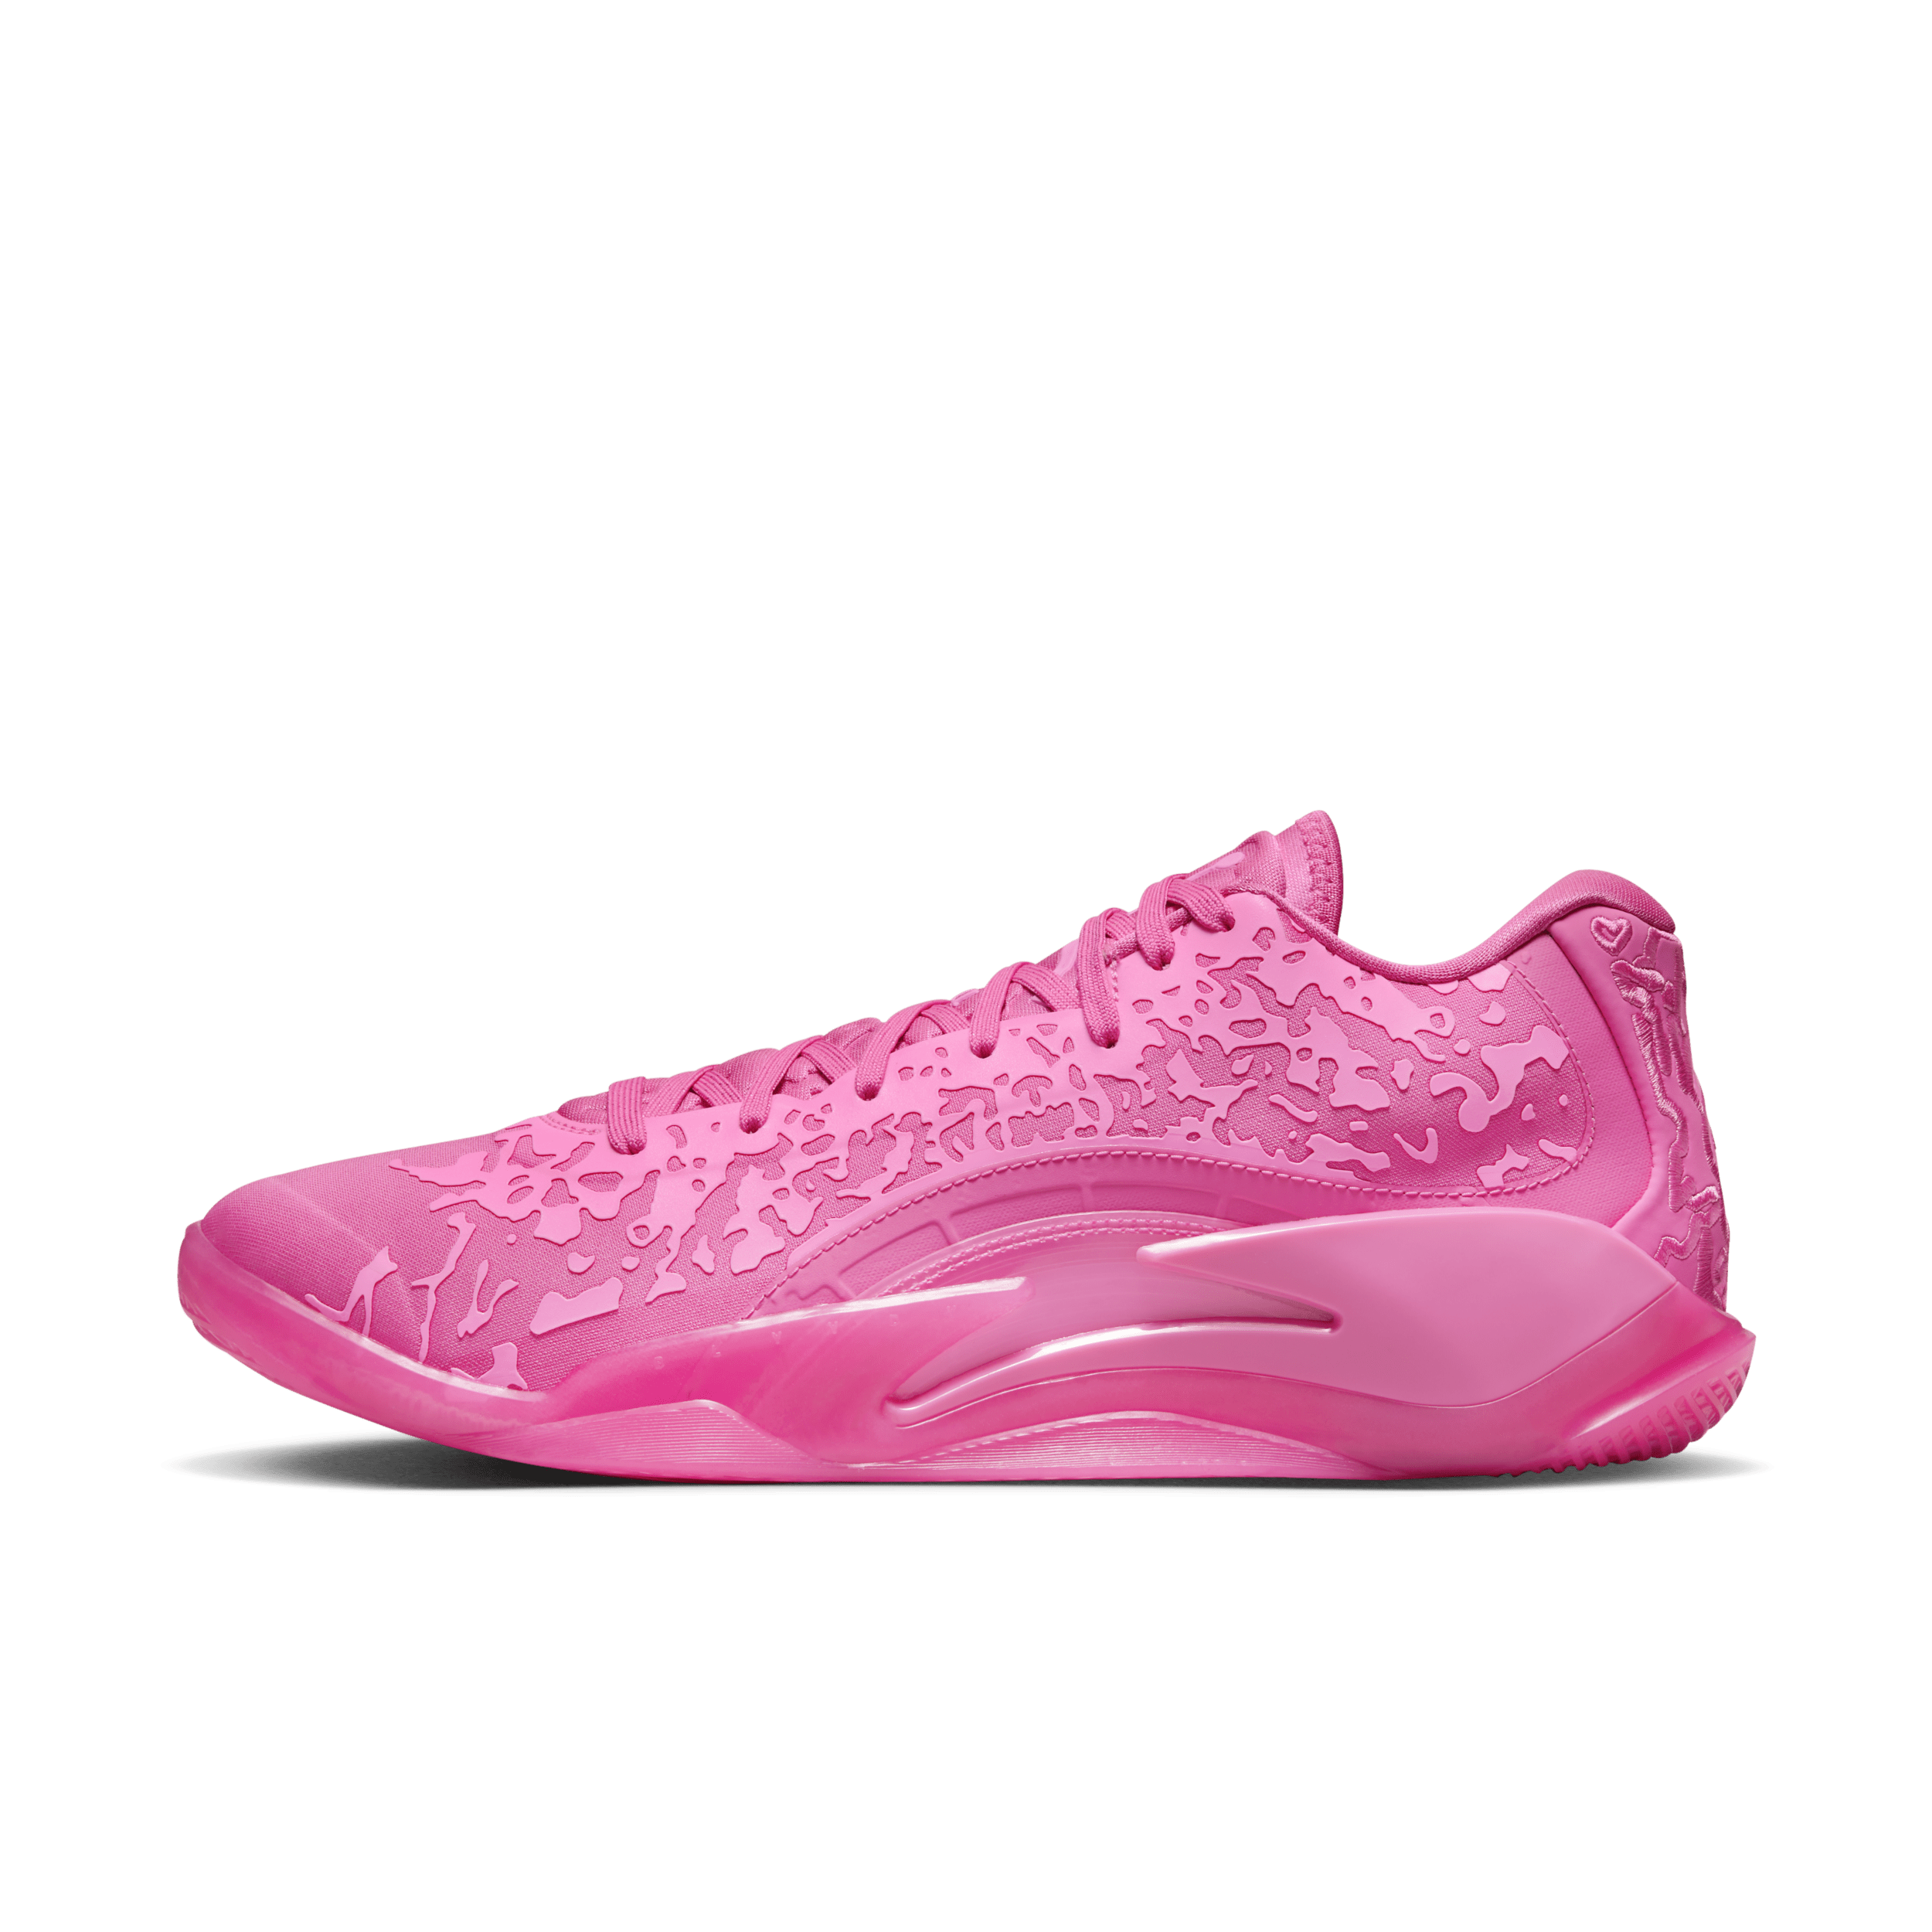 Nike Zion 3 basketbalschoenen - Roze